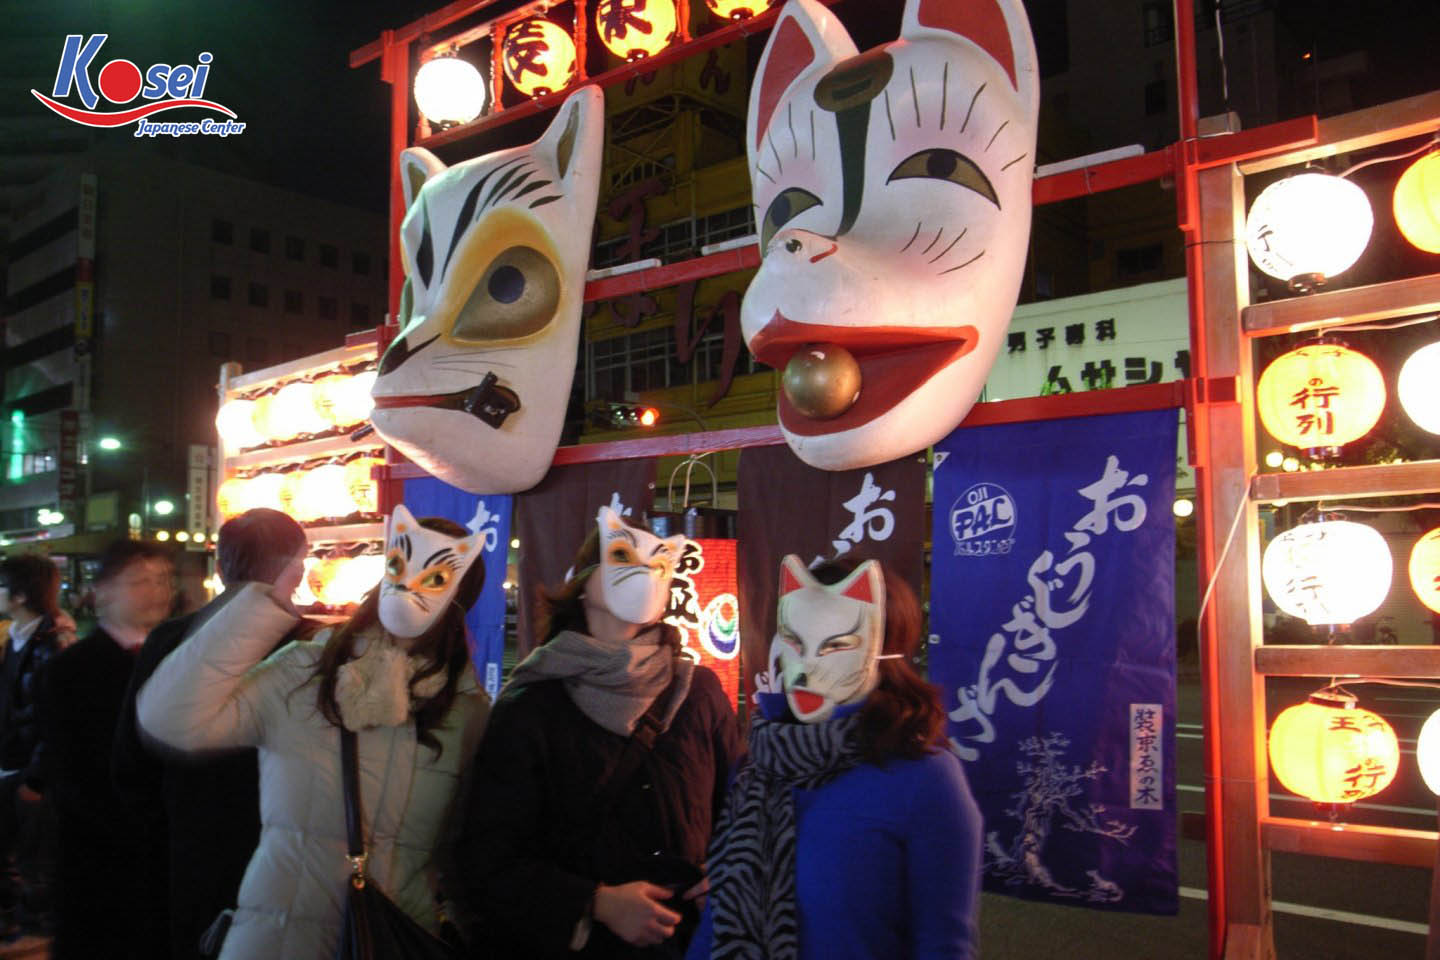 mặt nạ cáo trong văn hóa nhật bản, kitsune văn hoá nhật bản